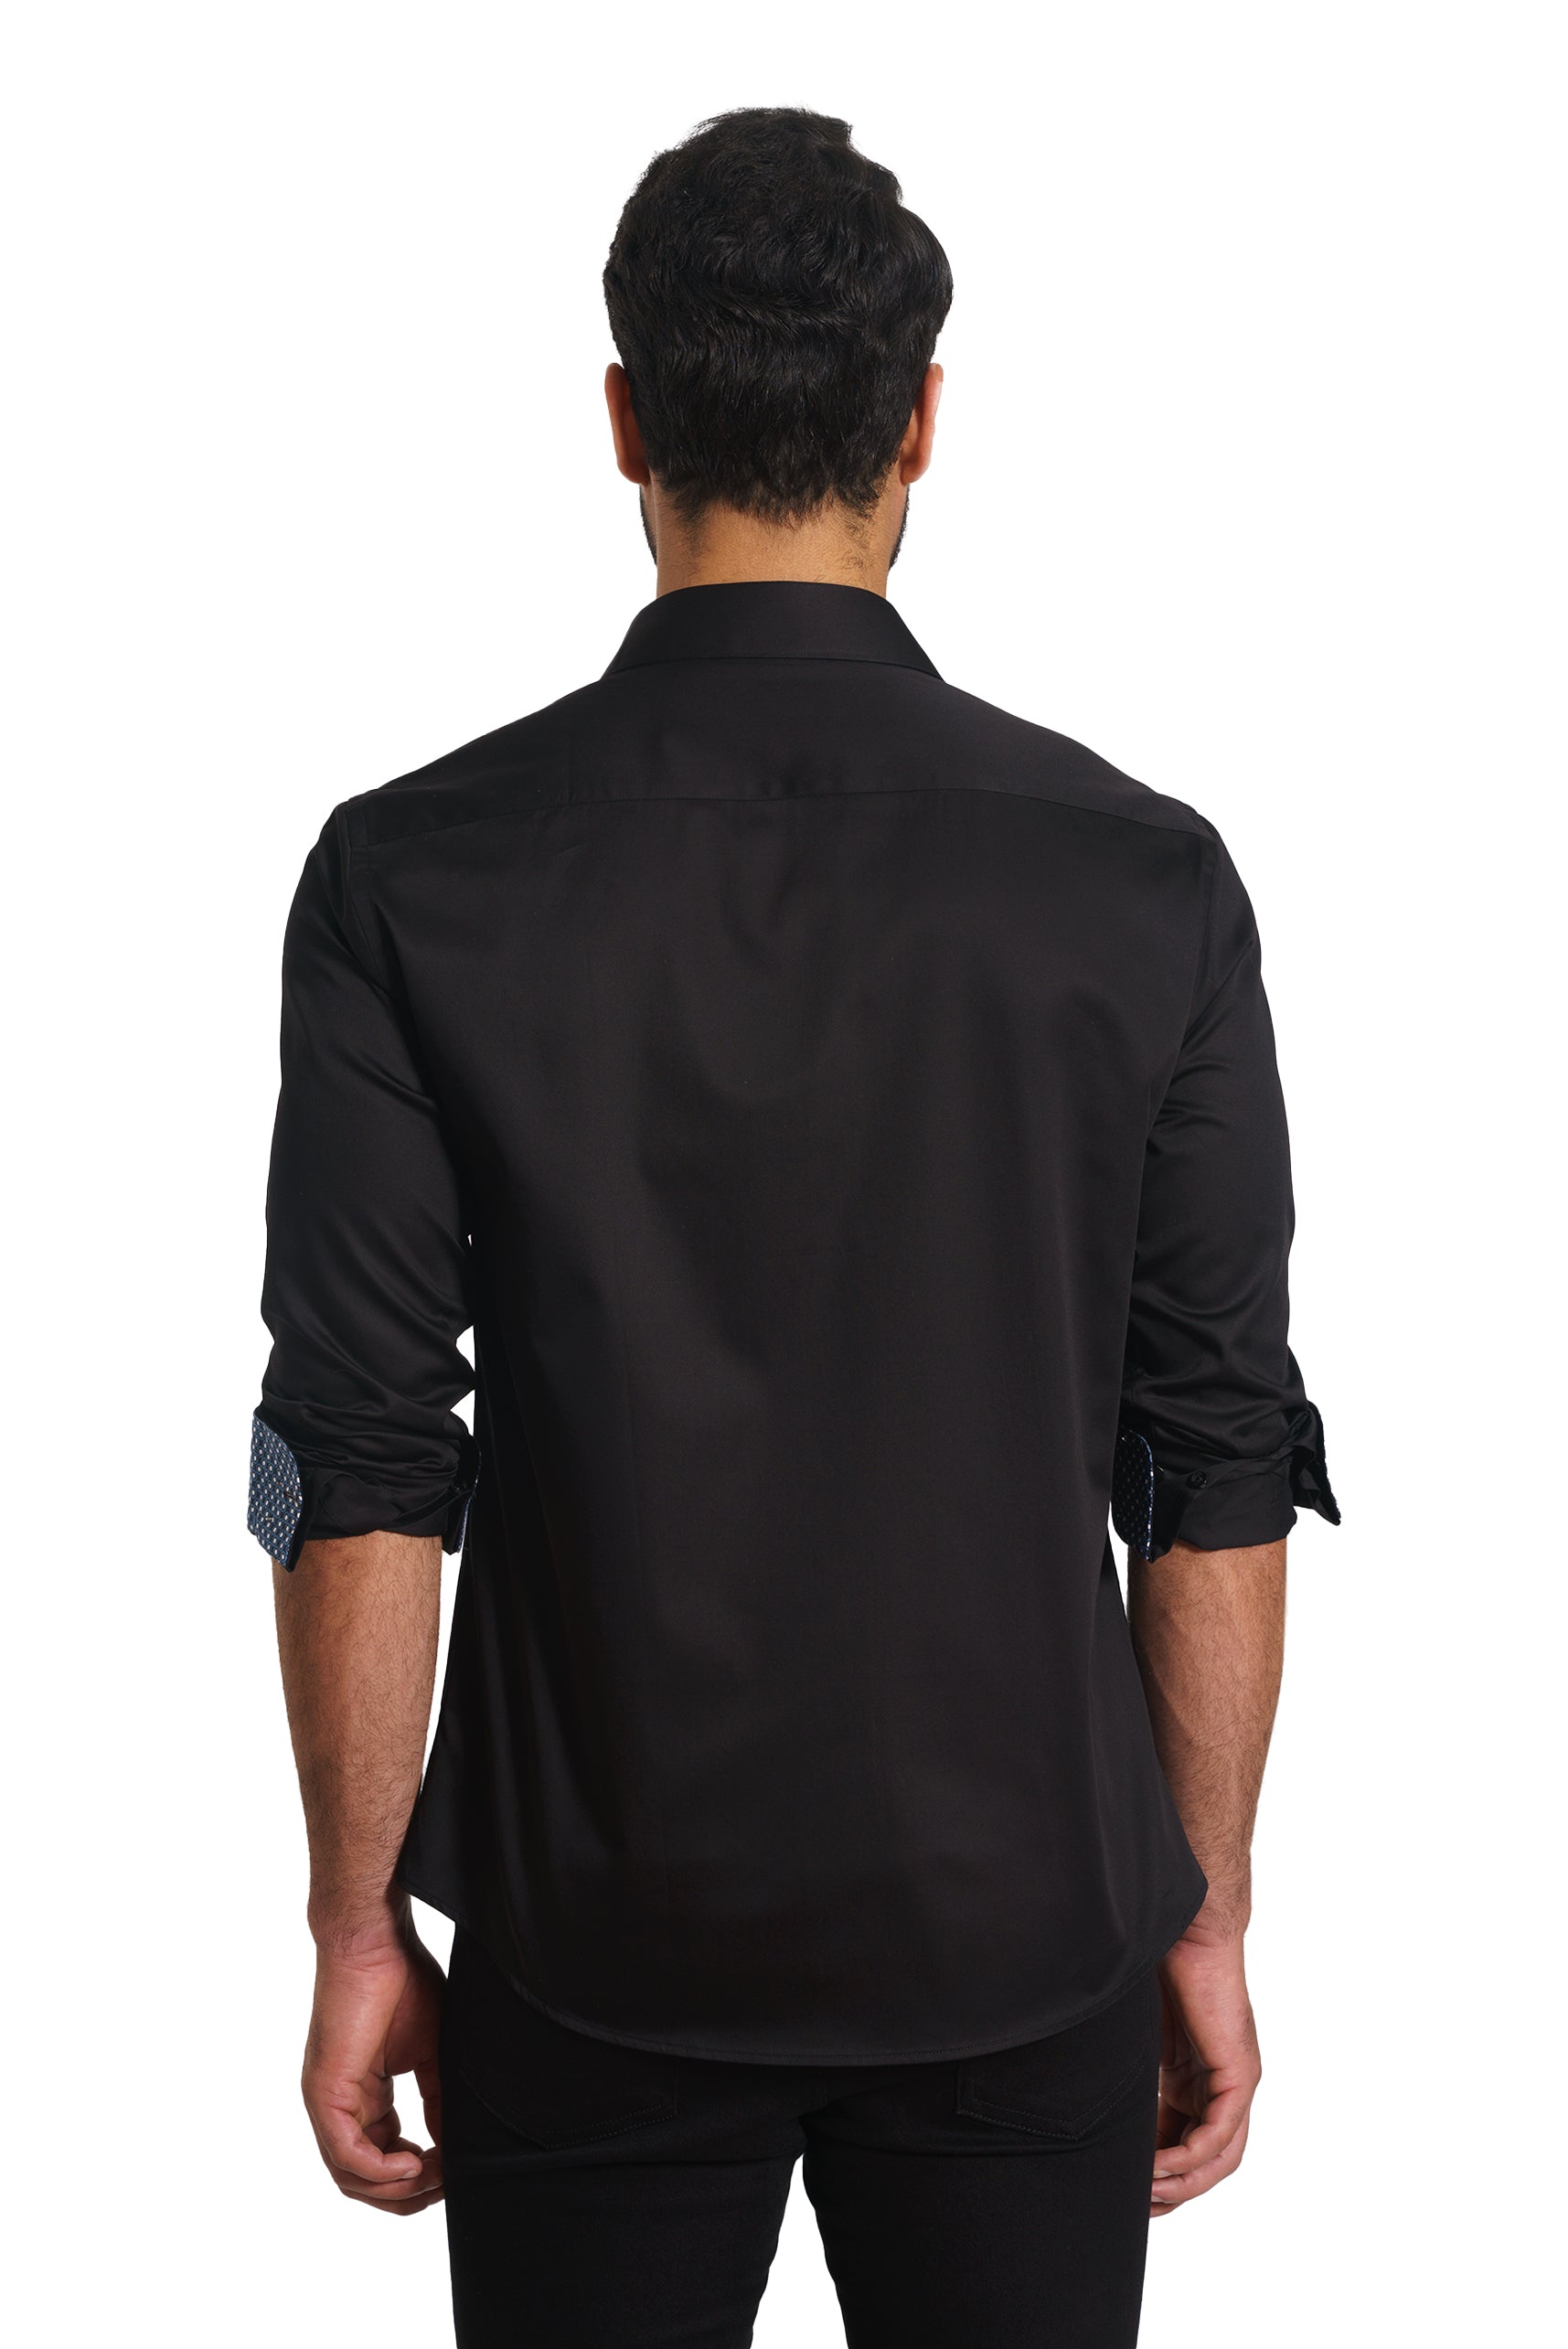 Black Long Sleeve Shirt TH-2861 Back